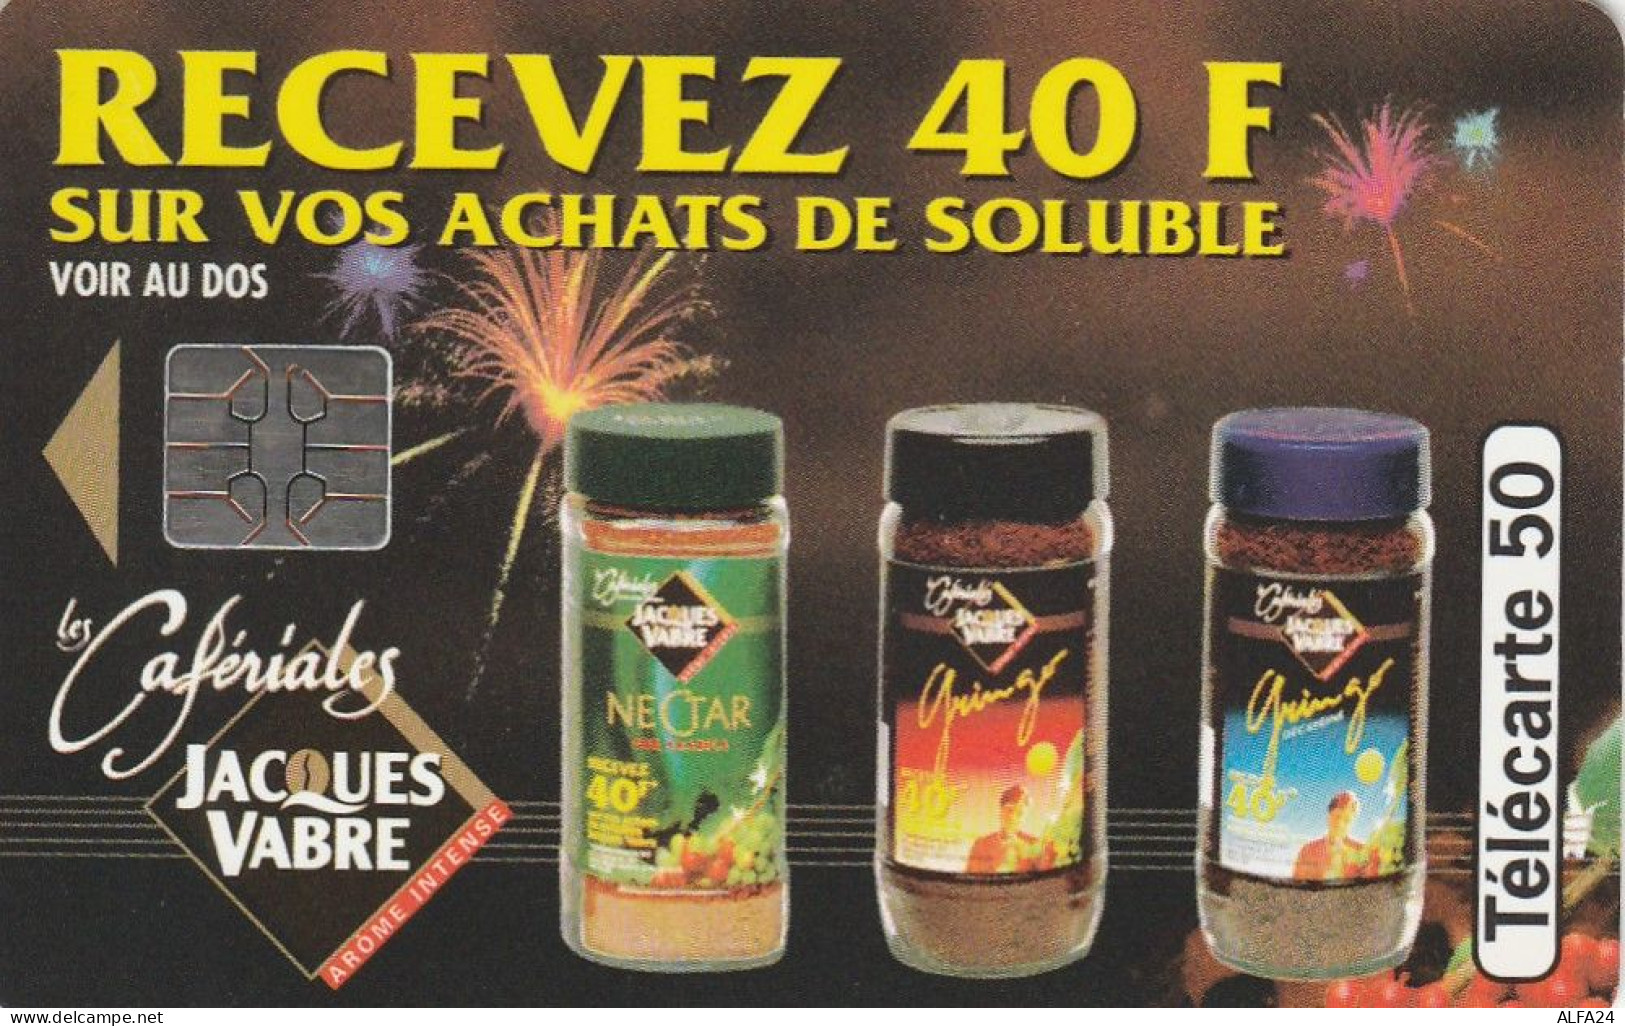 TELECARTE F469A CAFERALIES VABRE (2) - 1994